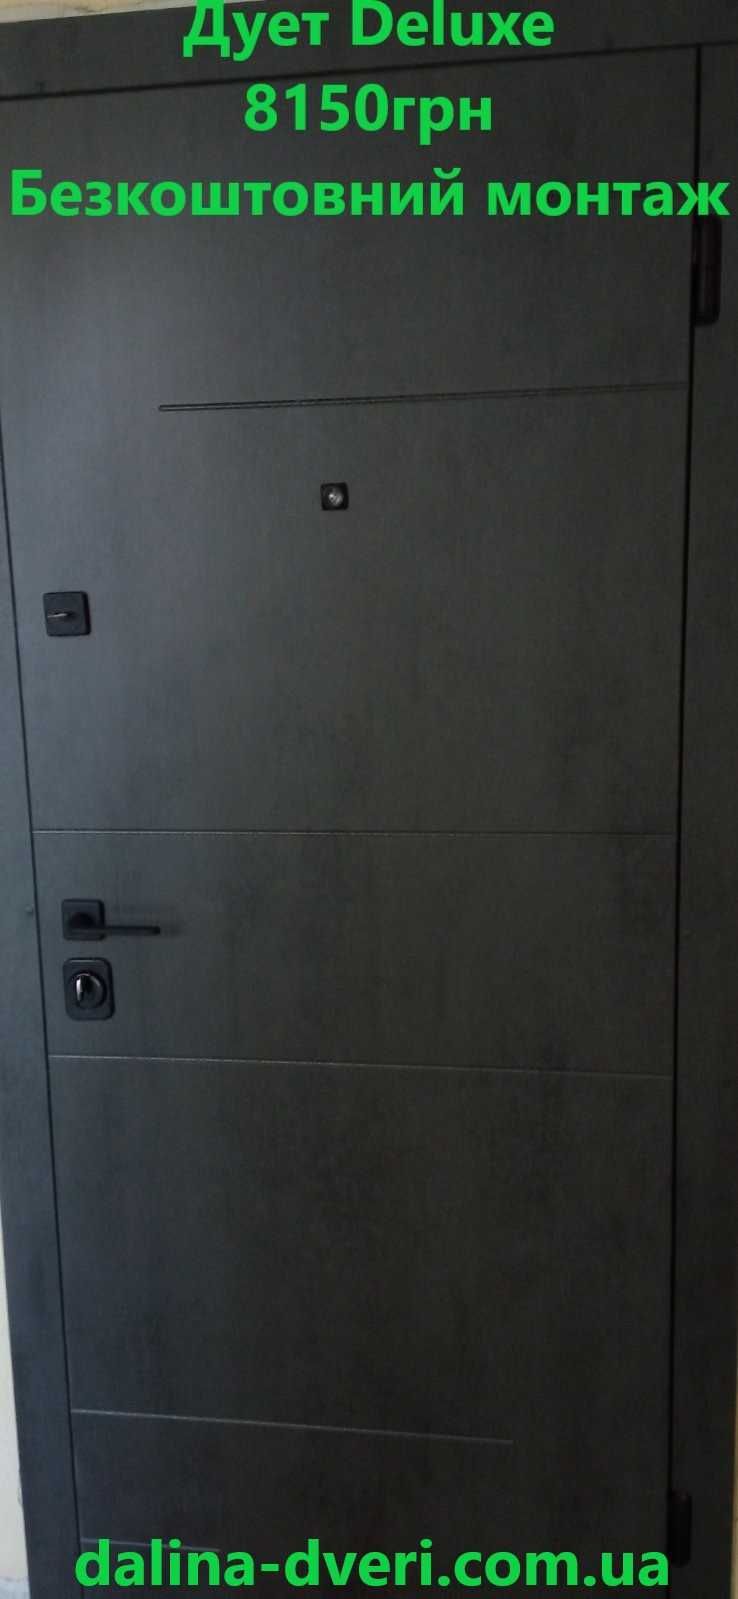 безкоштовний монтаж двері вхідні зі складу Двері металеві броньовані